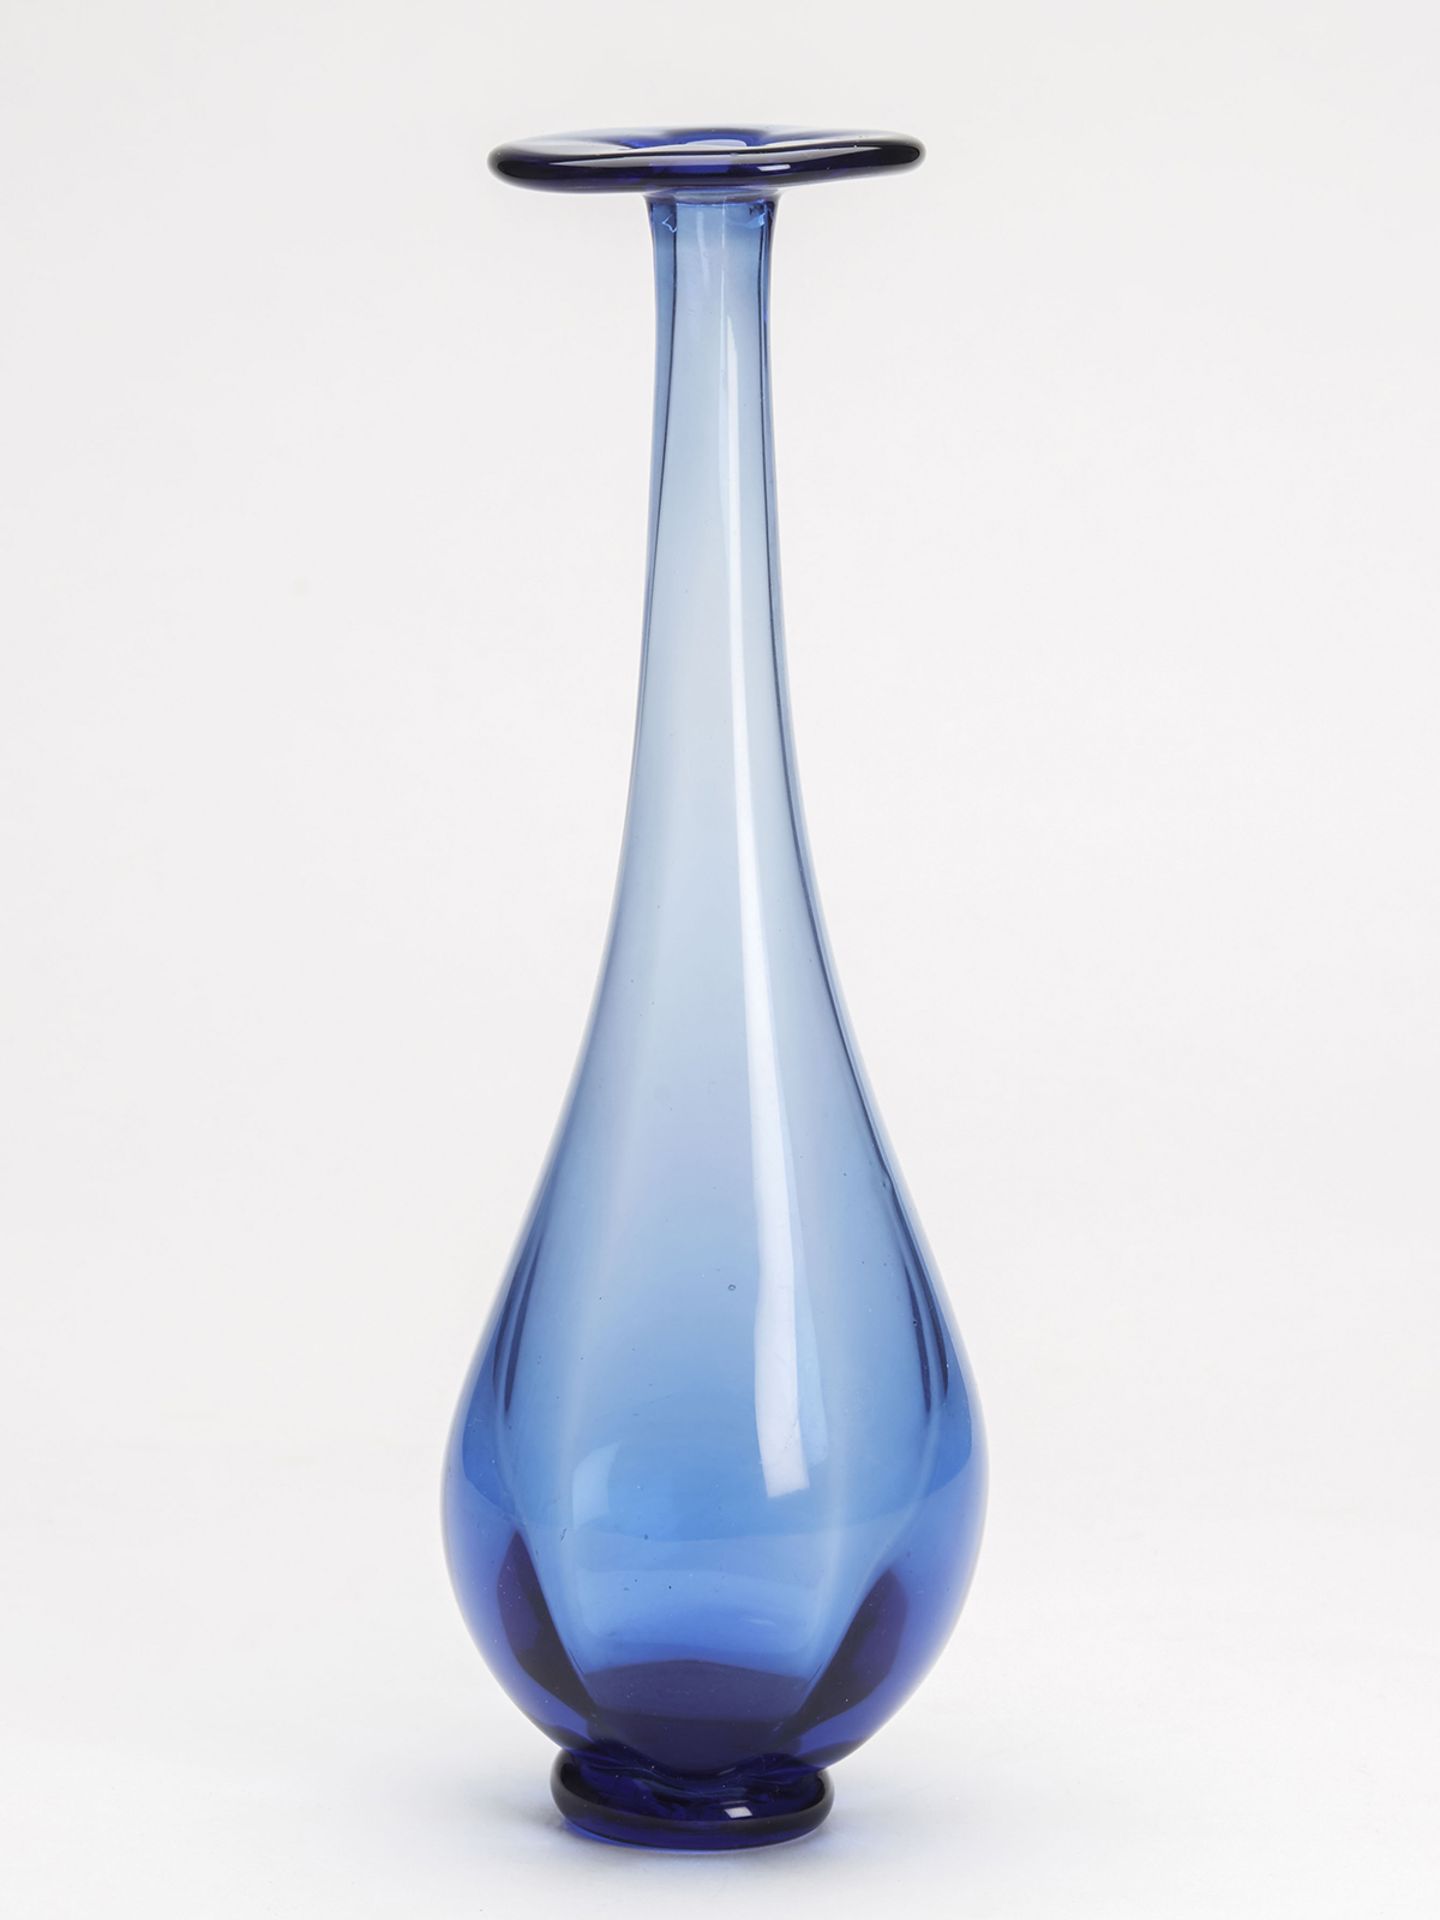 Vintage Signed Scandinavian? Blue Art Glass Vase 20Th C.